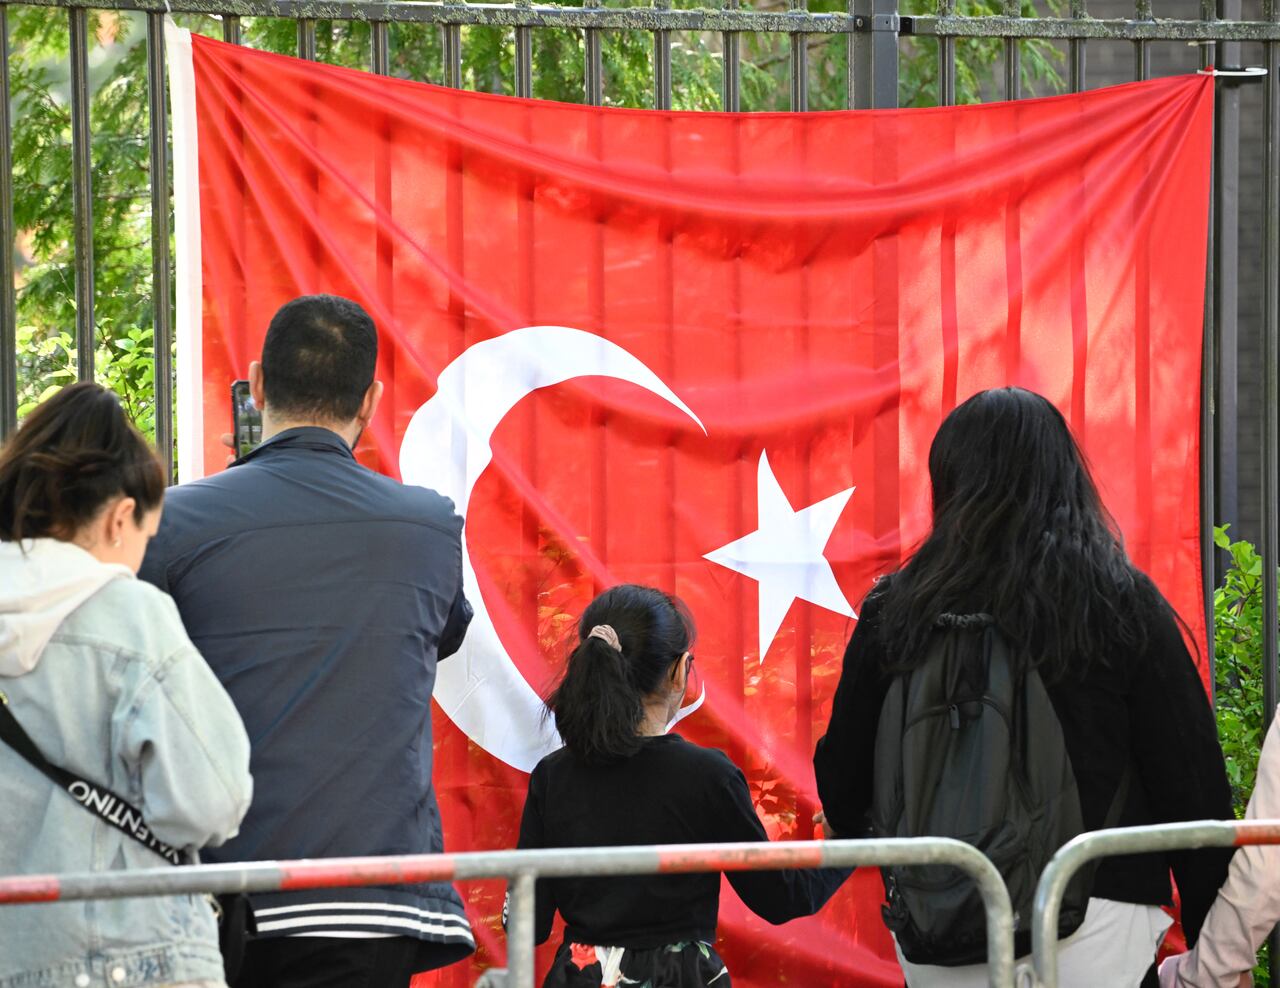 Los votantes turcos pasan una bandera turca mientras se dirigen al colegio electoral en el consulado turco en Berlín el 9 de mayo de 2023. Hay aproximadamente 1,5 millones de votantes turcos registrados que viven en Alemania, la diáspora más grande que participa en las elecciones más importantes de Turquía en décadas. . (Photo by Tobias SCHWARZ / AFP) / TO GO WITH AFP STORY BY FEMKE COLBORNE